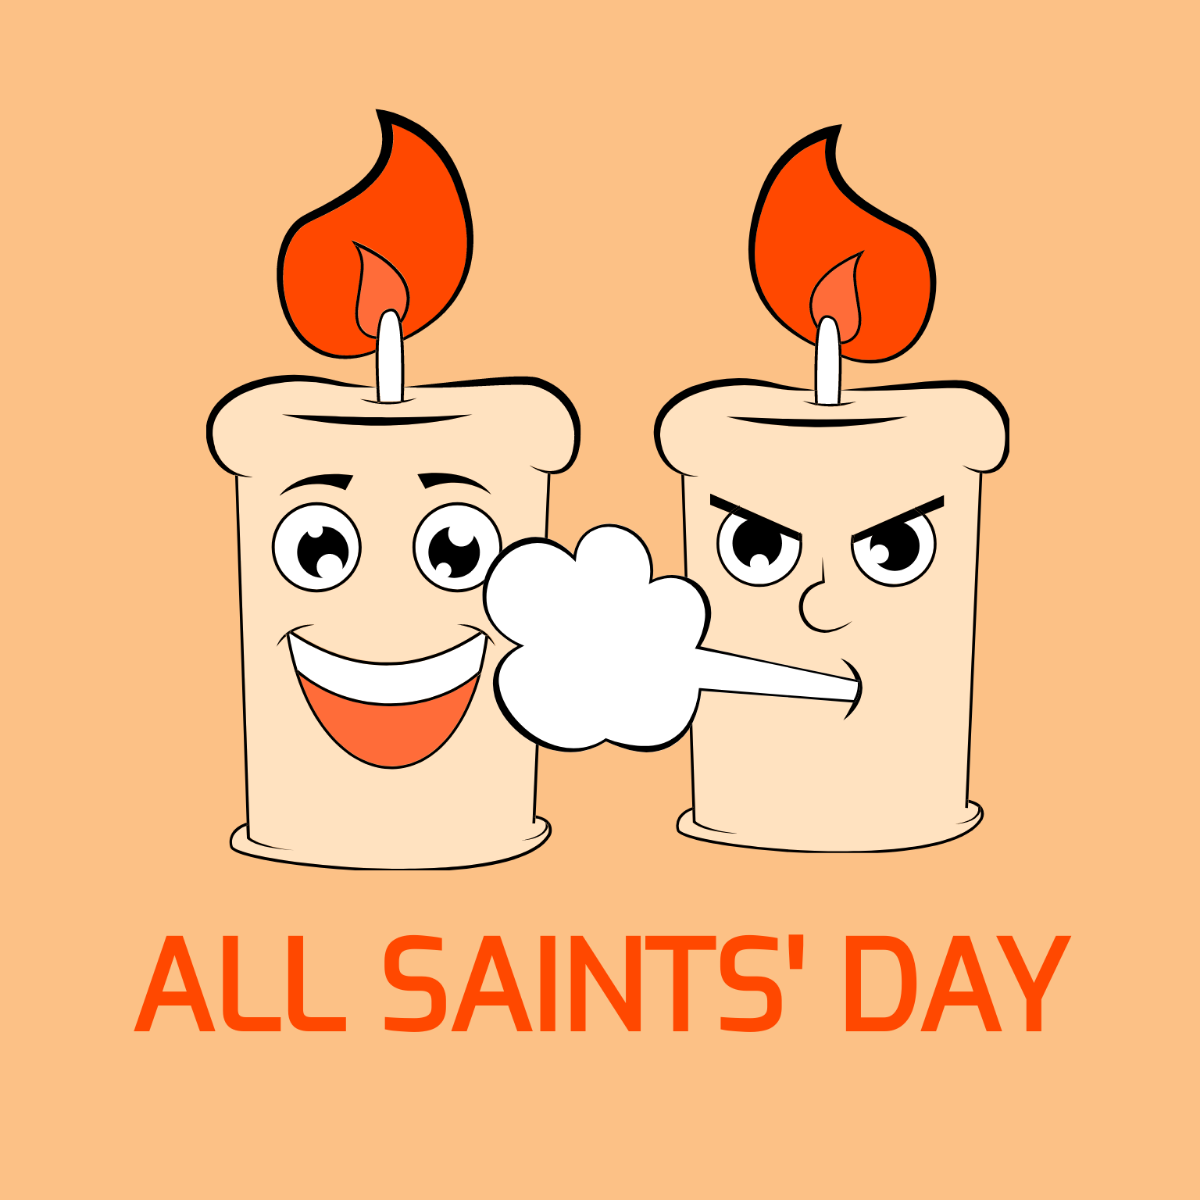 All Saints' Day Cartoon Vector